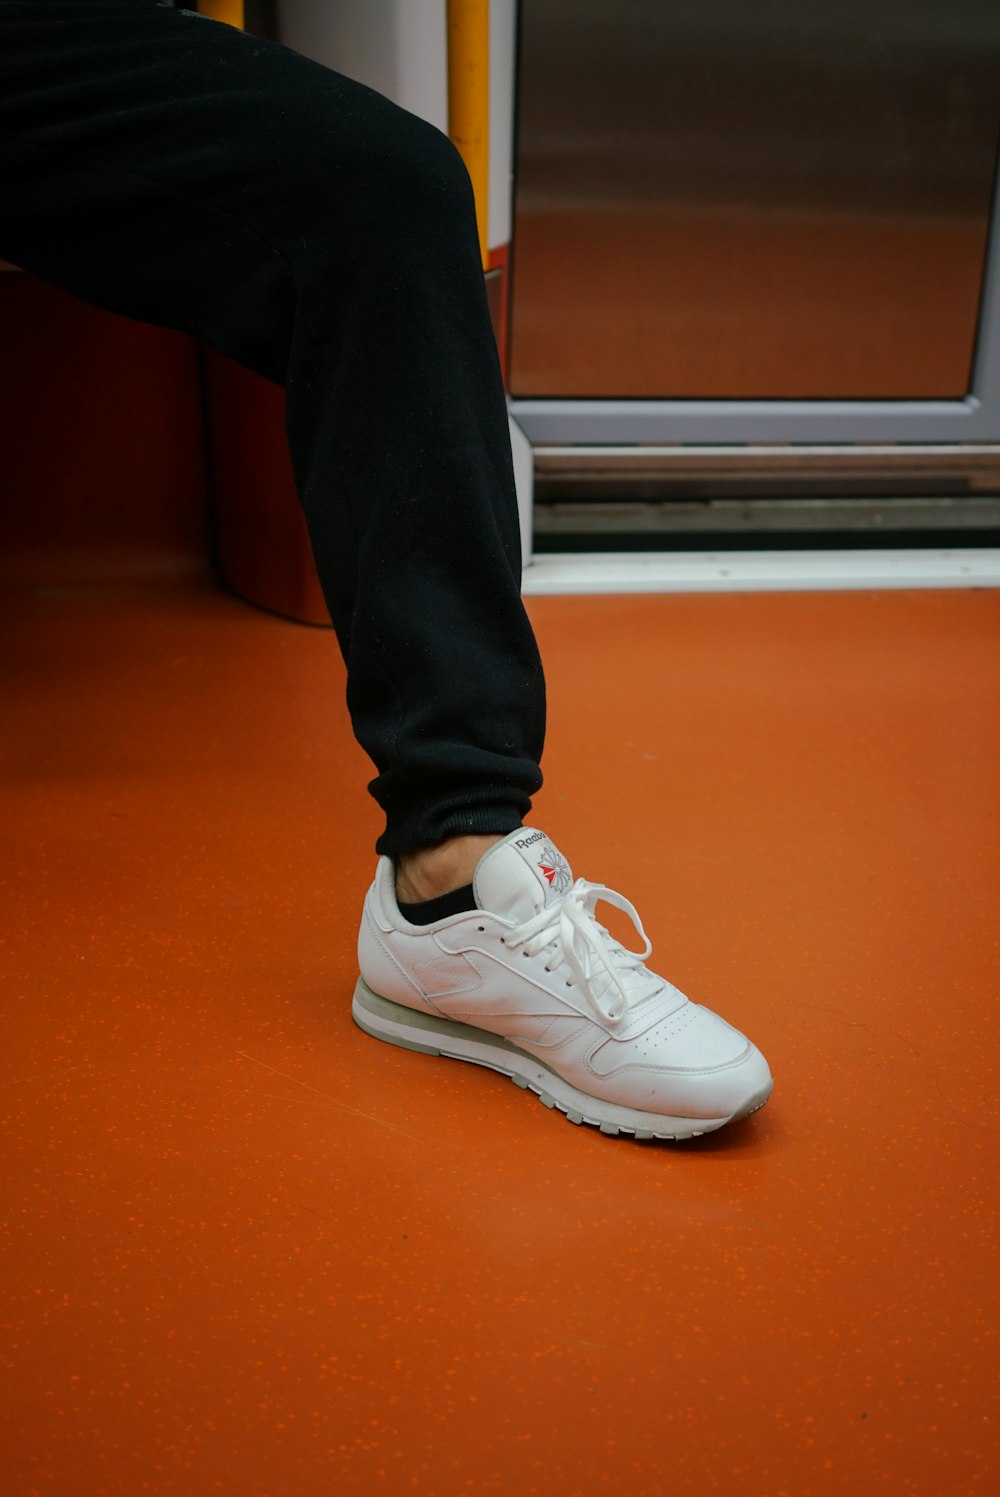 una persona in piedi su un treno con il piede a terra